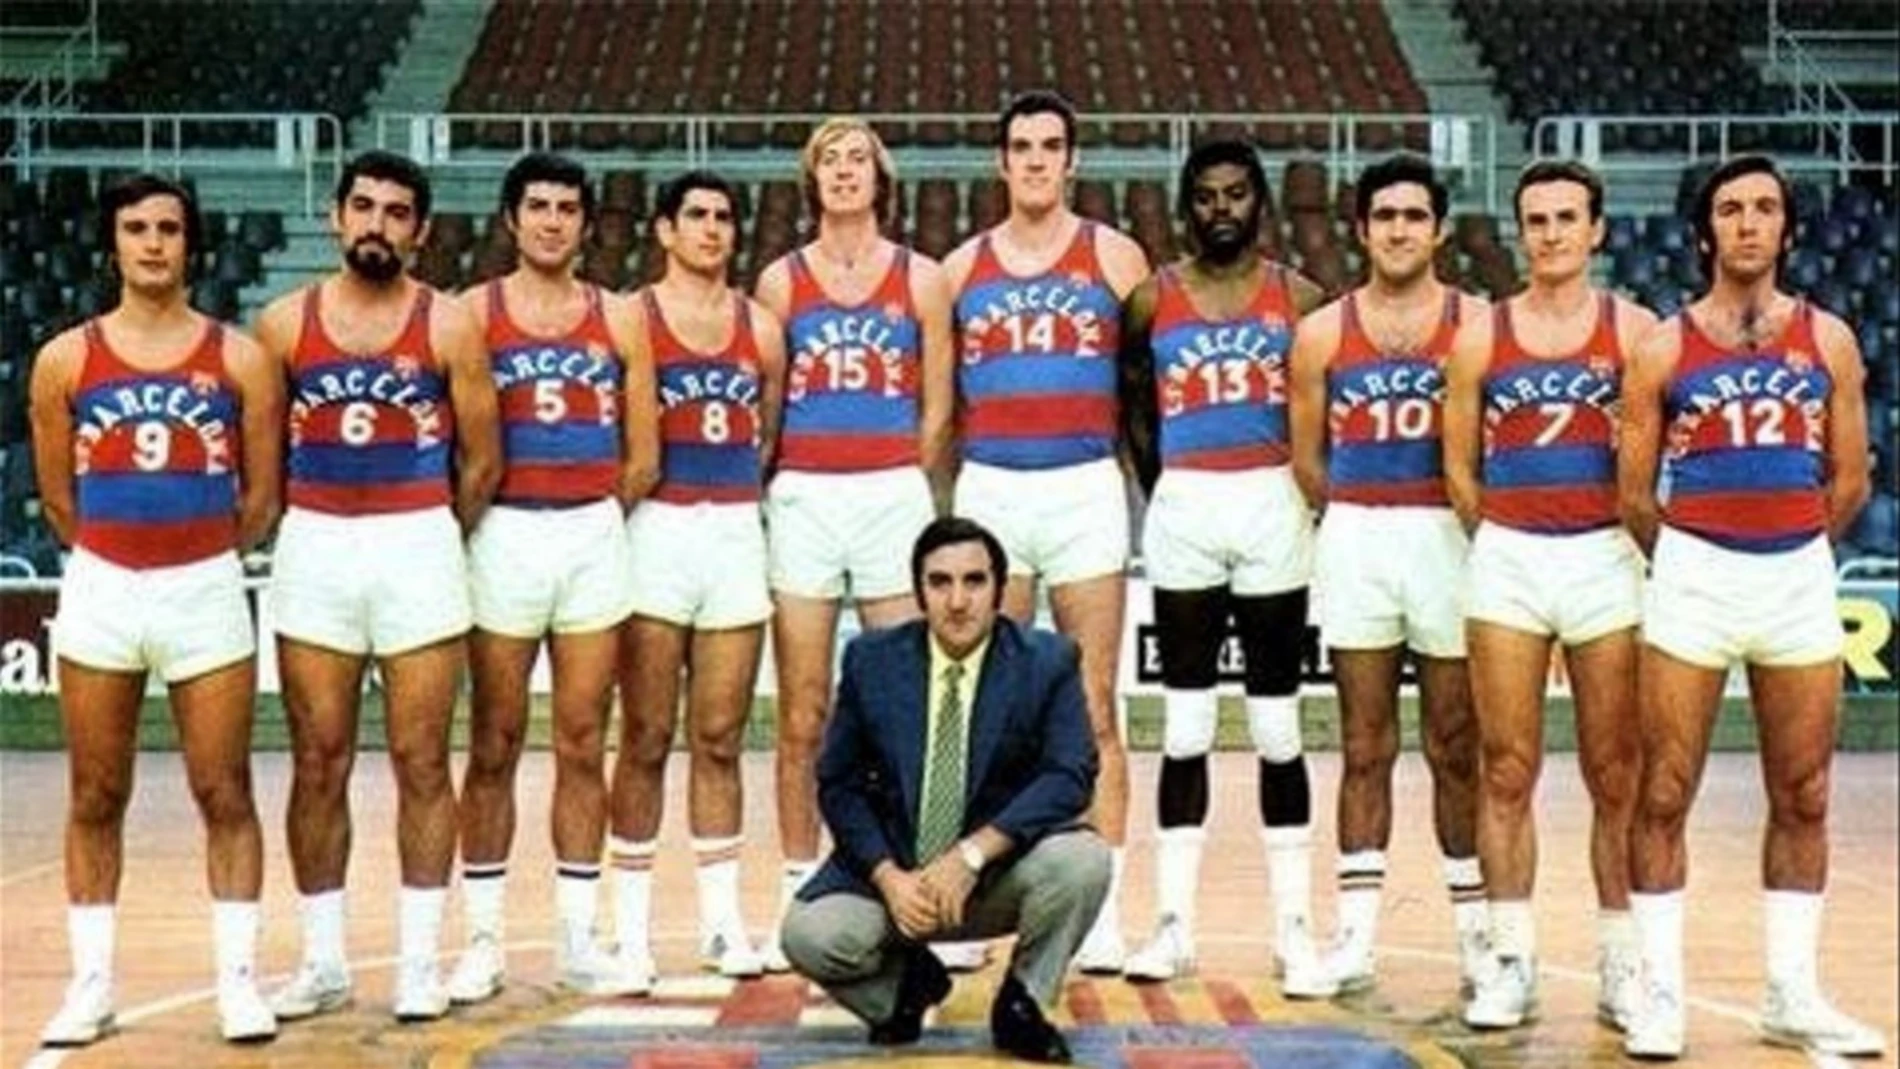 Plantilla del Barça basket en la década de los 80, con Charles Thomas en sus filas